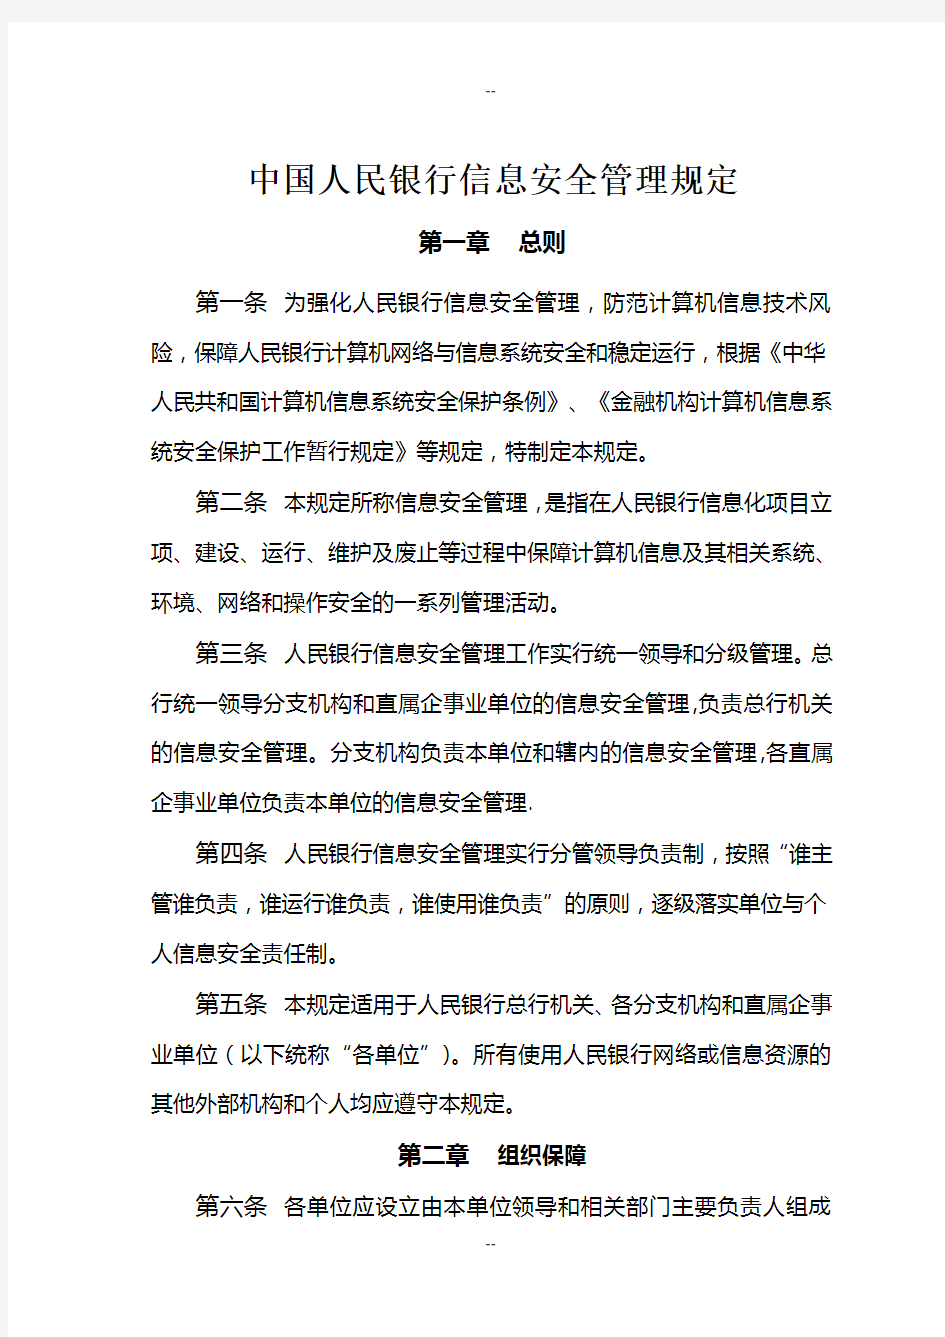 中国人民银行信息安全管理规定